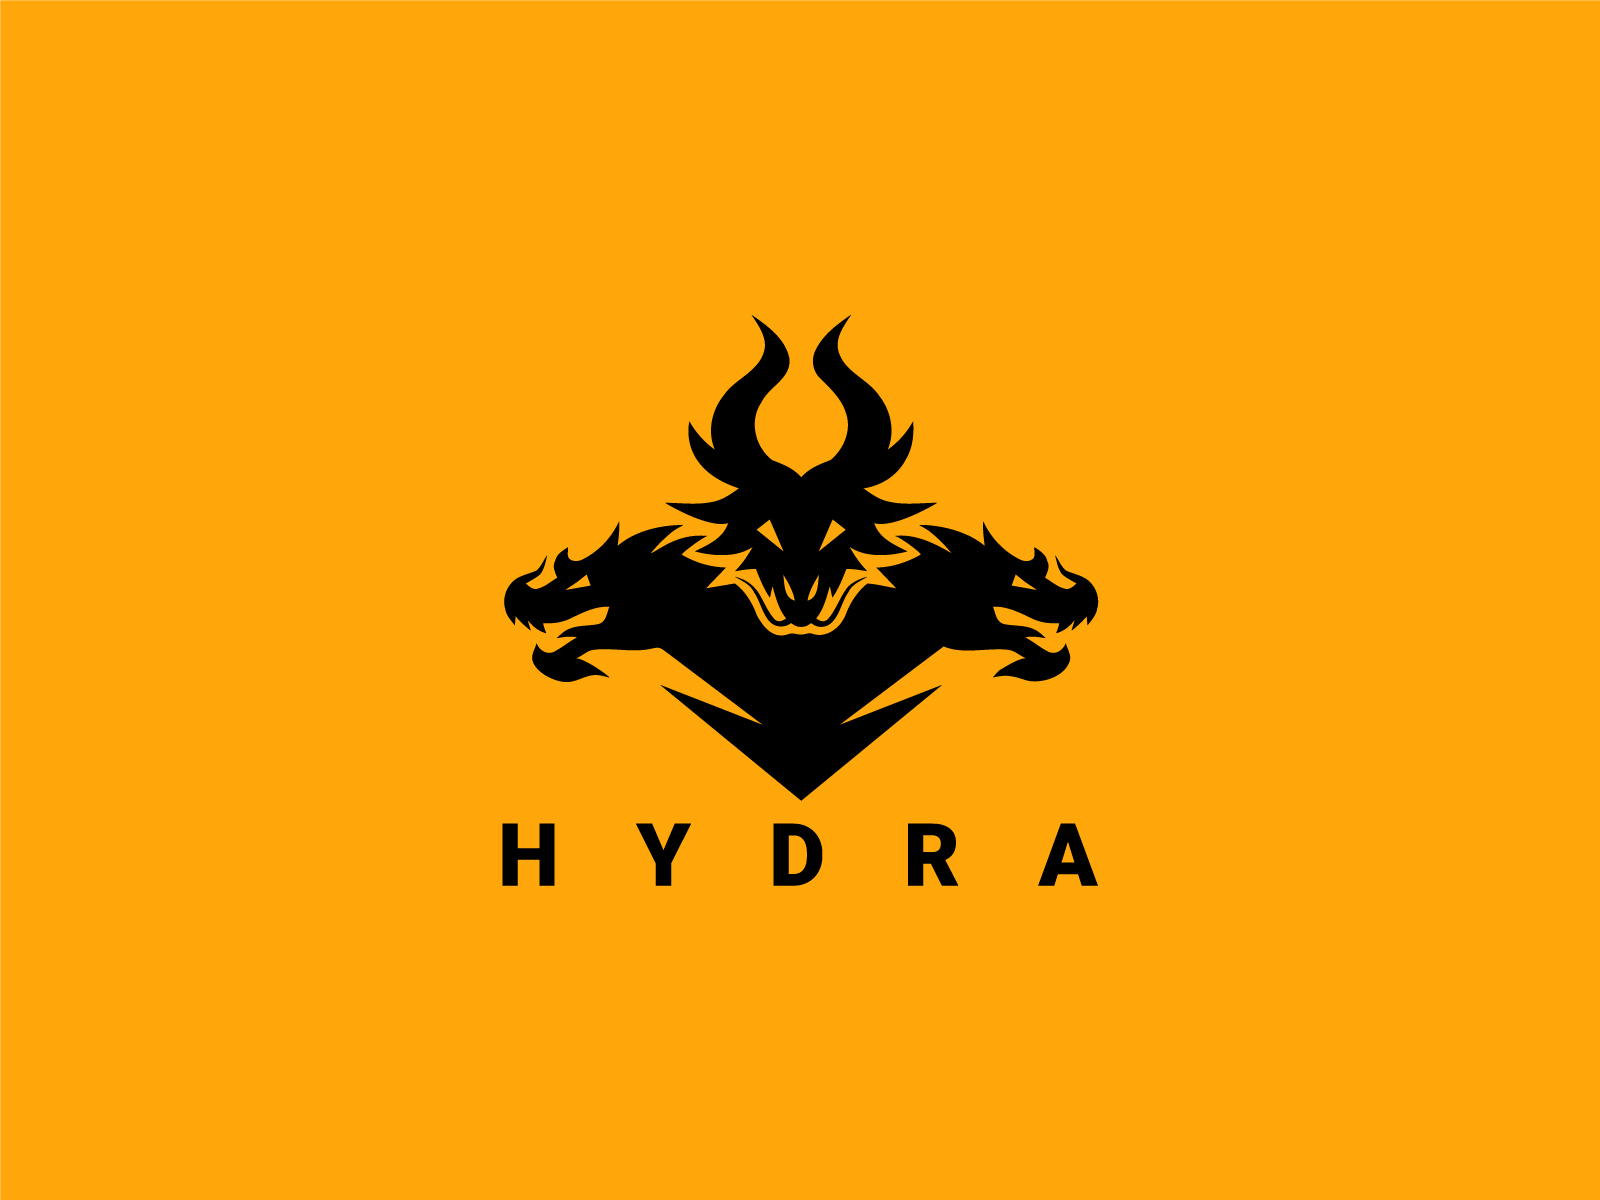 Hydra Logos - 13+ Best Hydra Logo Ideas. Free Hydra Logo Maker.